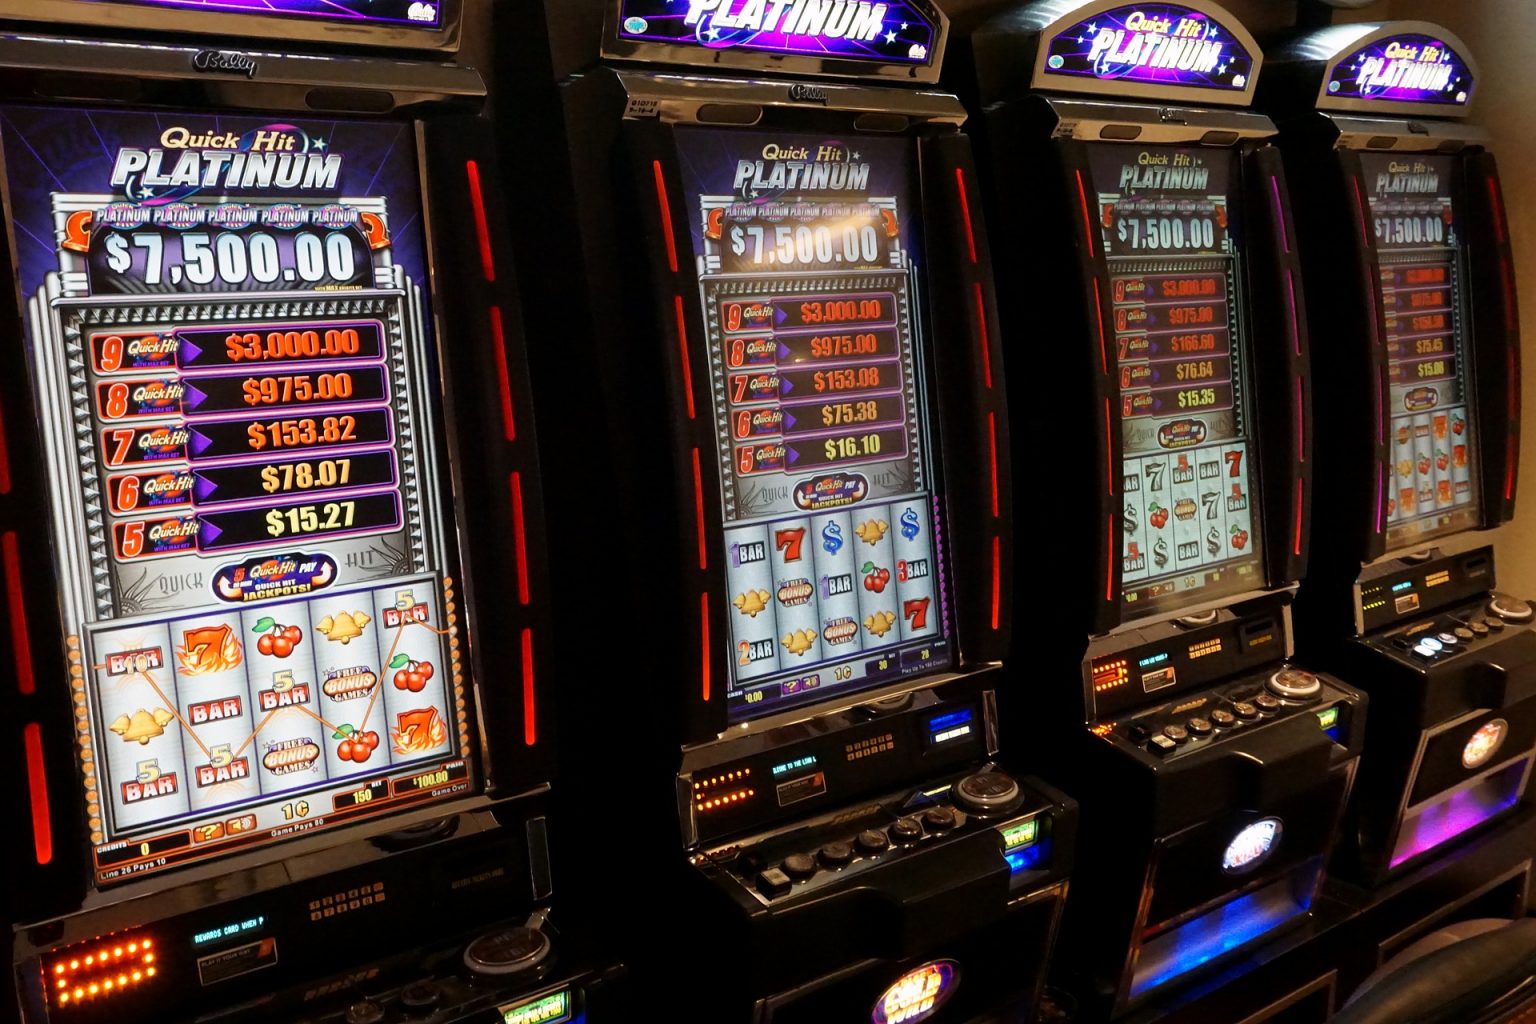 Slot casino slot machines 8 фильм кенгуру джекпот смотреть онлайн в хорошем